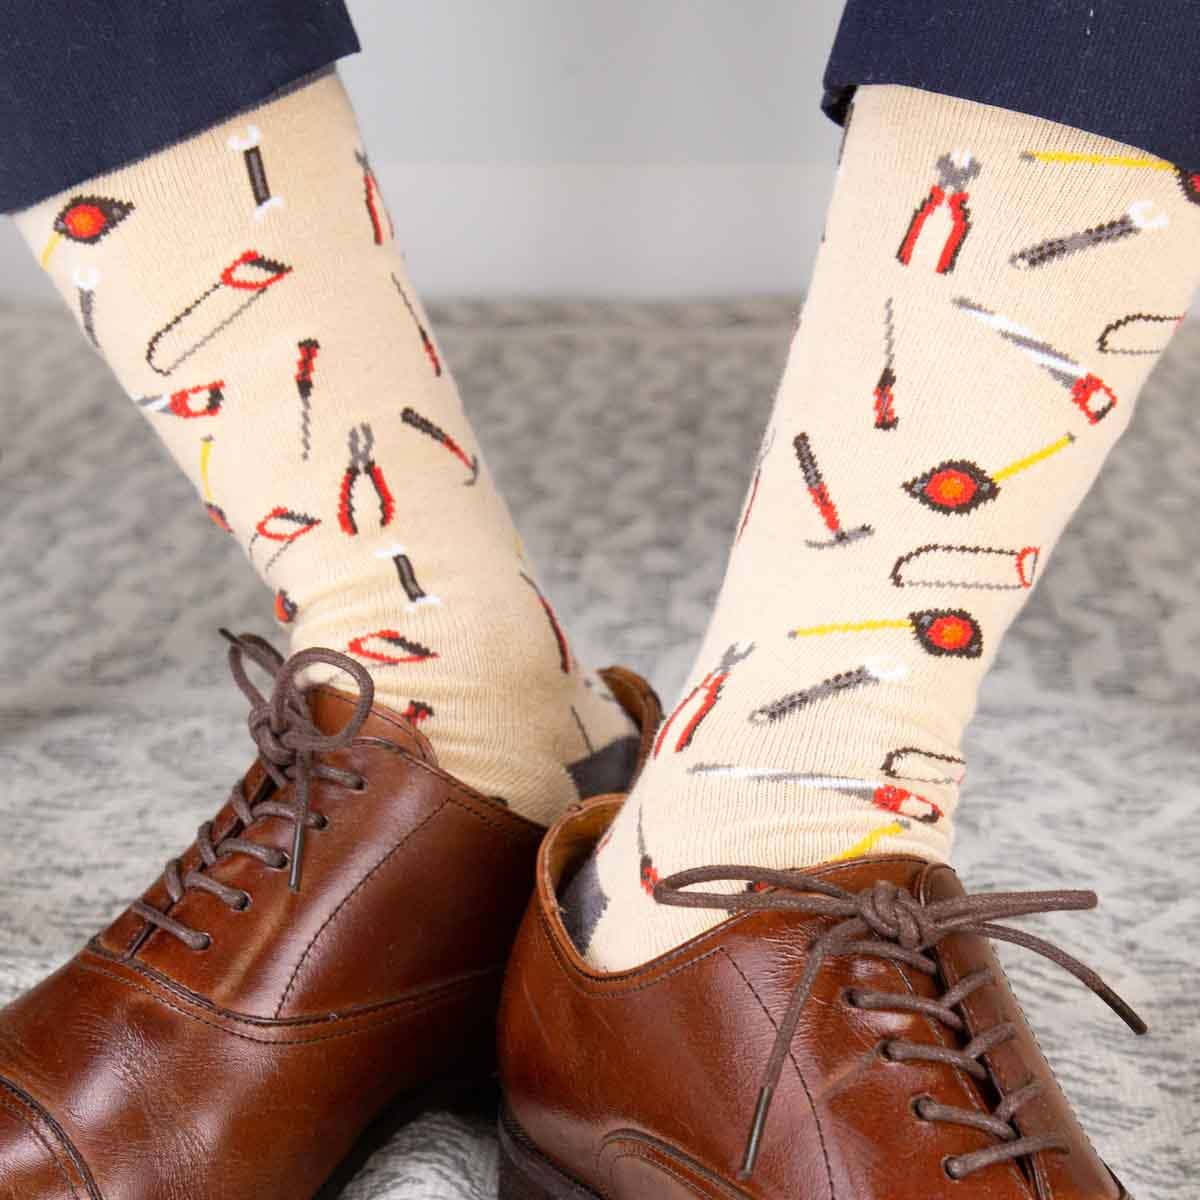 Men's Handyman Socks   Tan/Gray   One Size